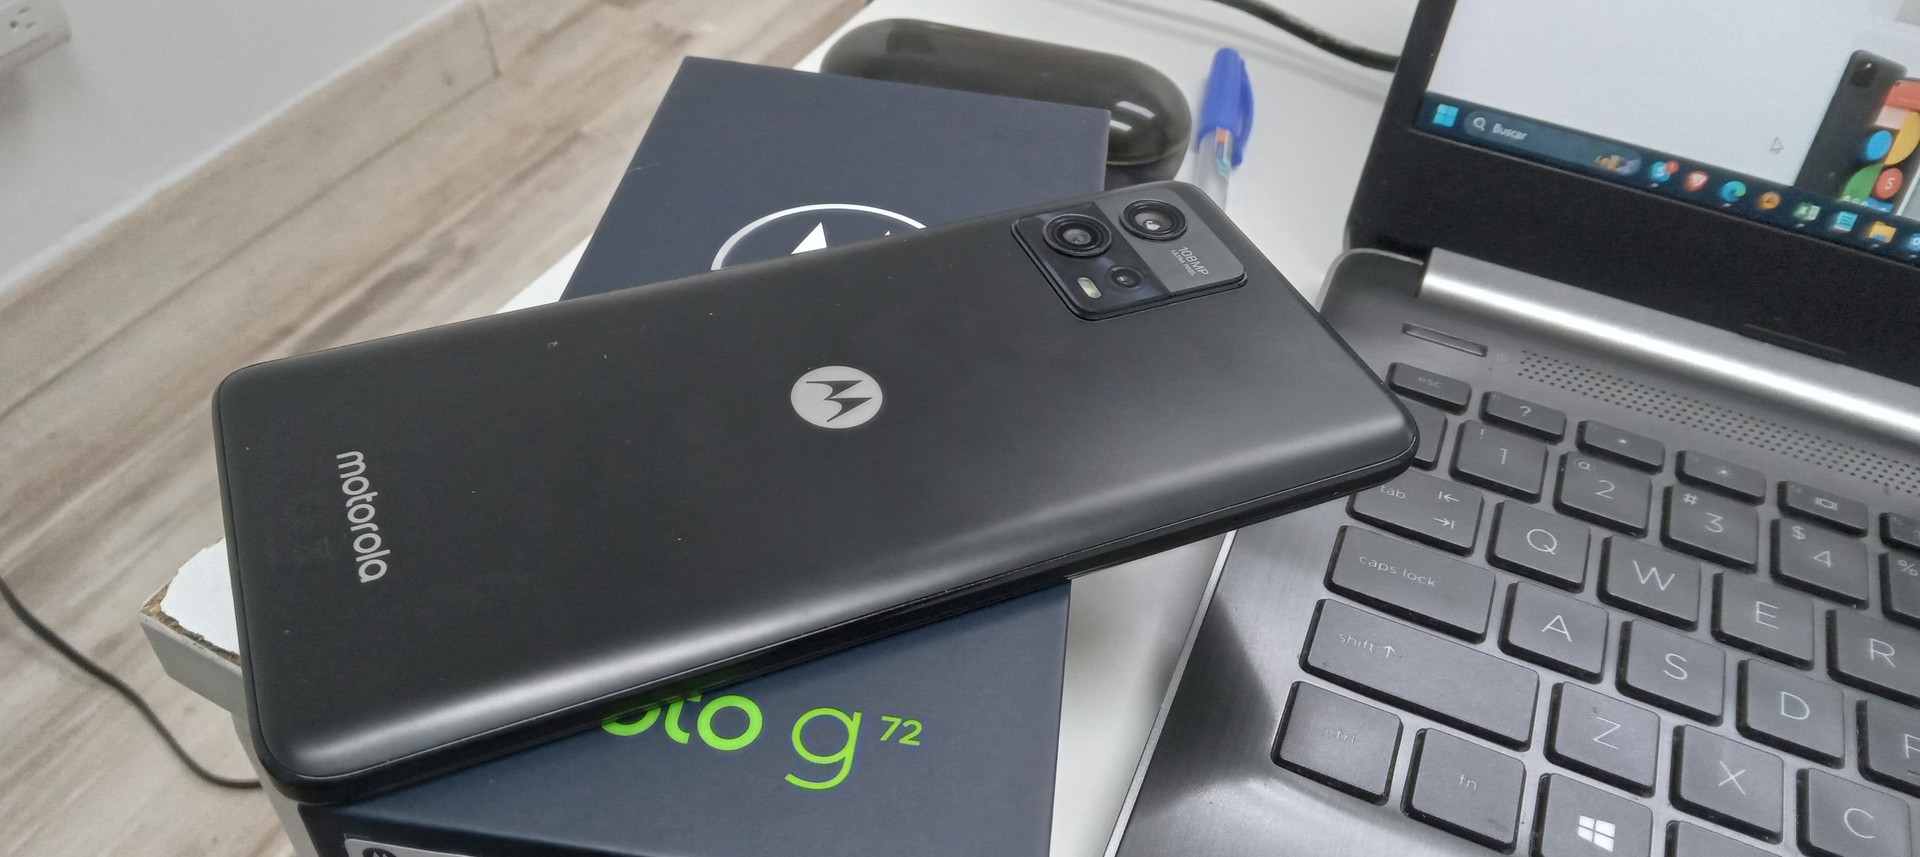 celulares y tabletas - Motorola g72 nuevo exclusivo de claro 128gb  0